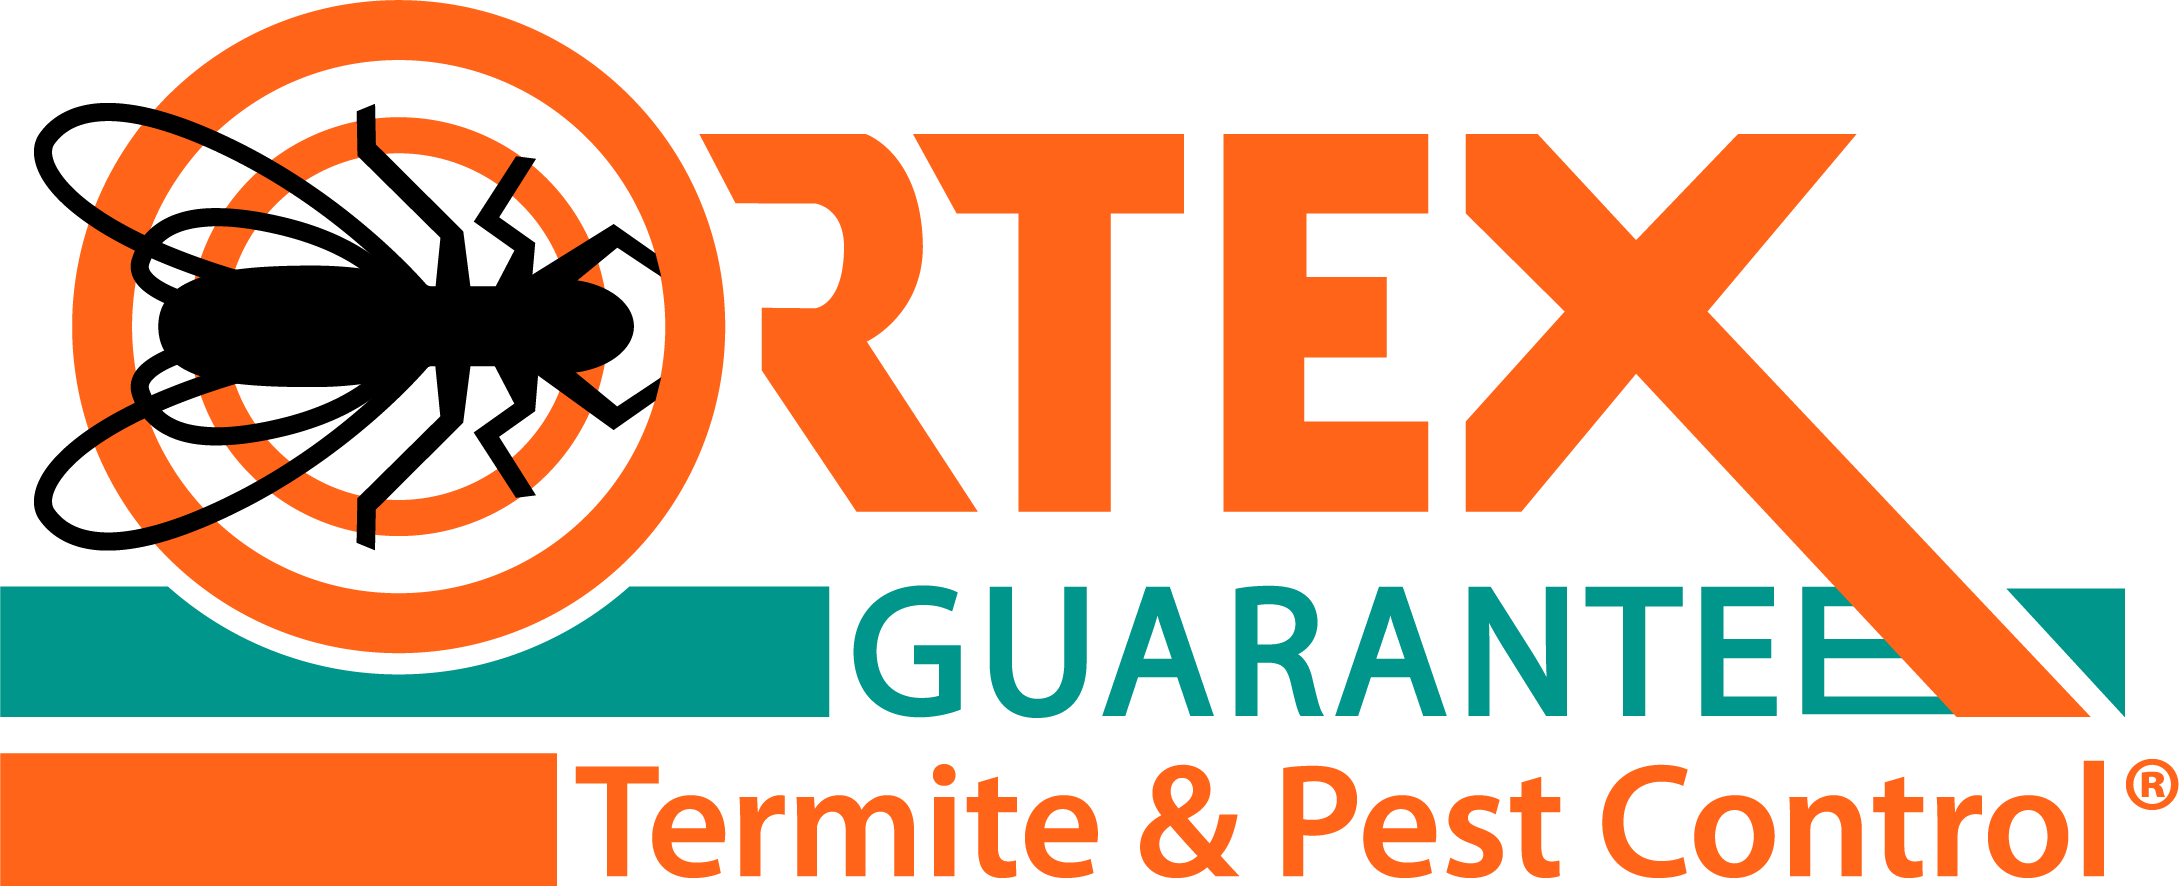 Ortex Termite and Pest Control - Huntsville Photo